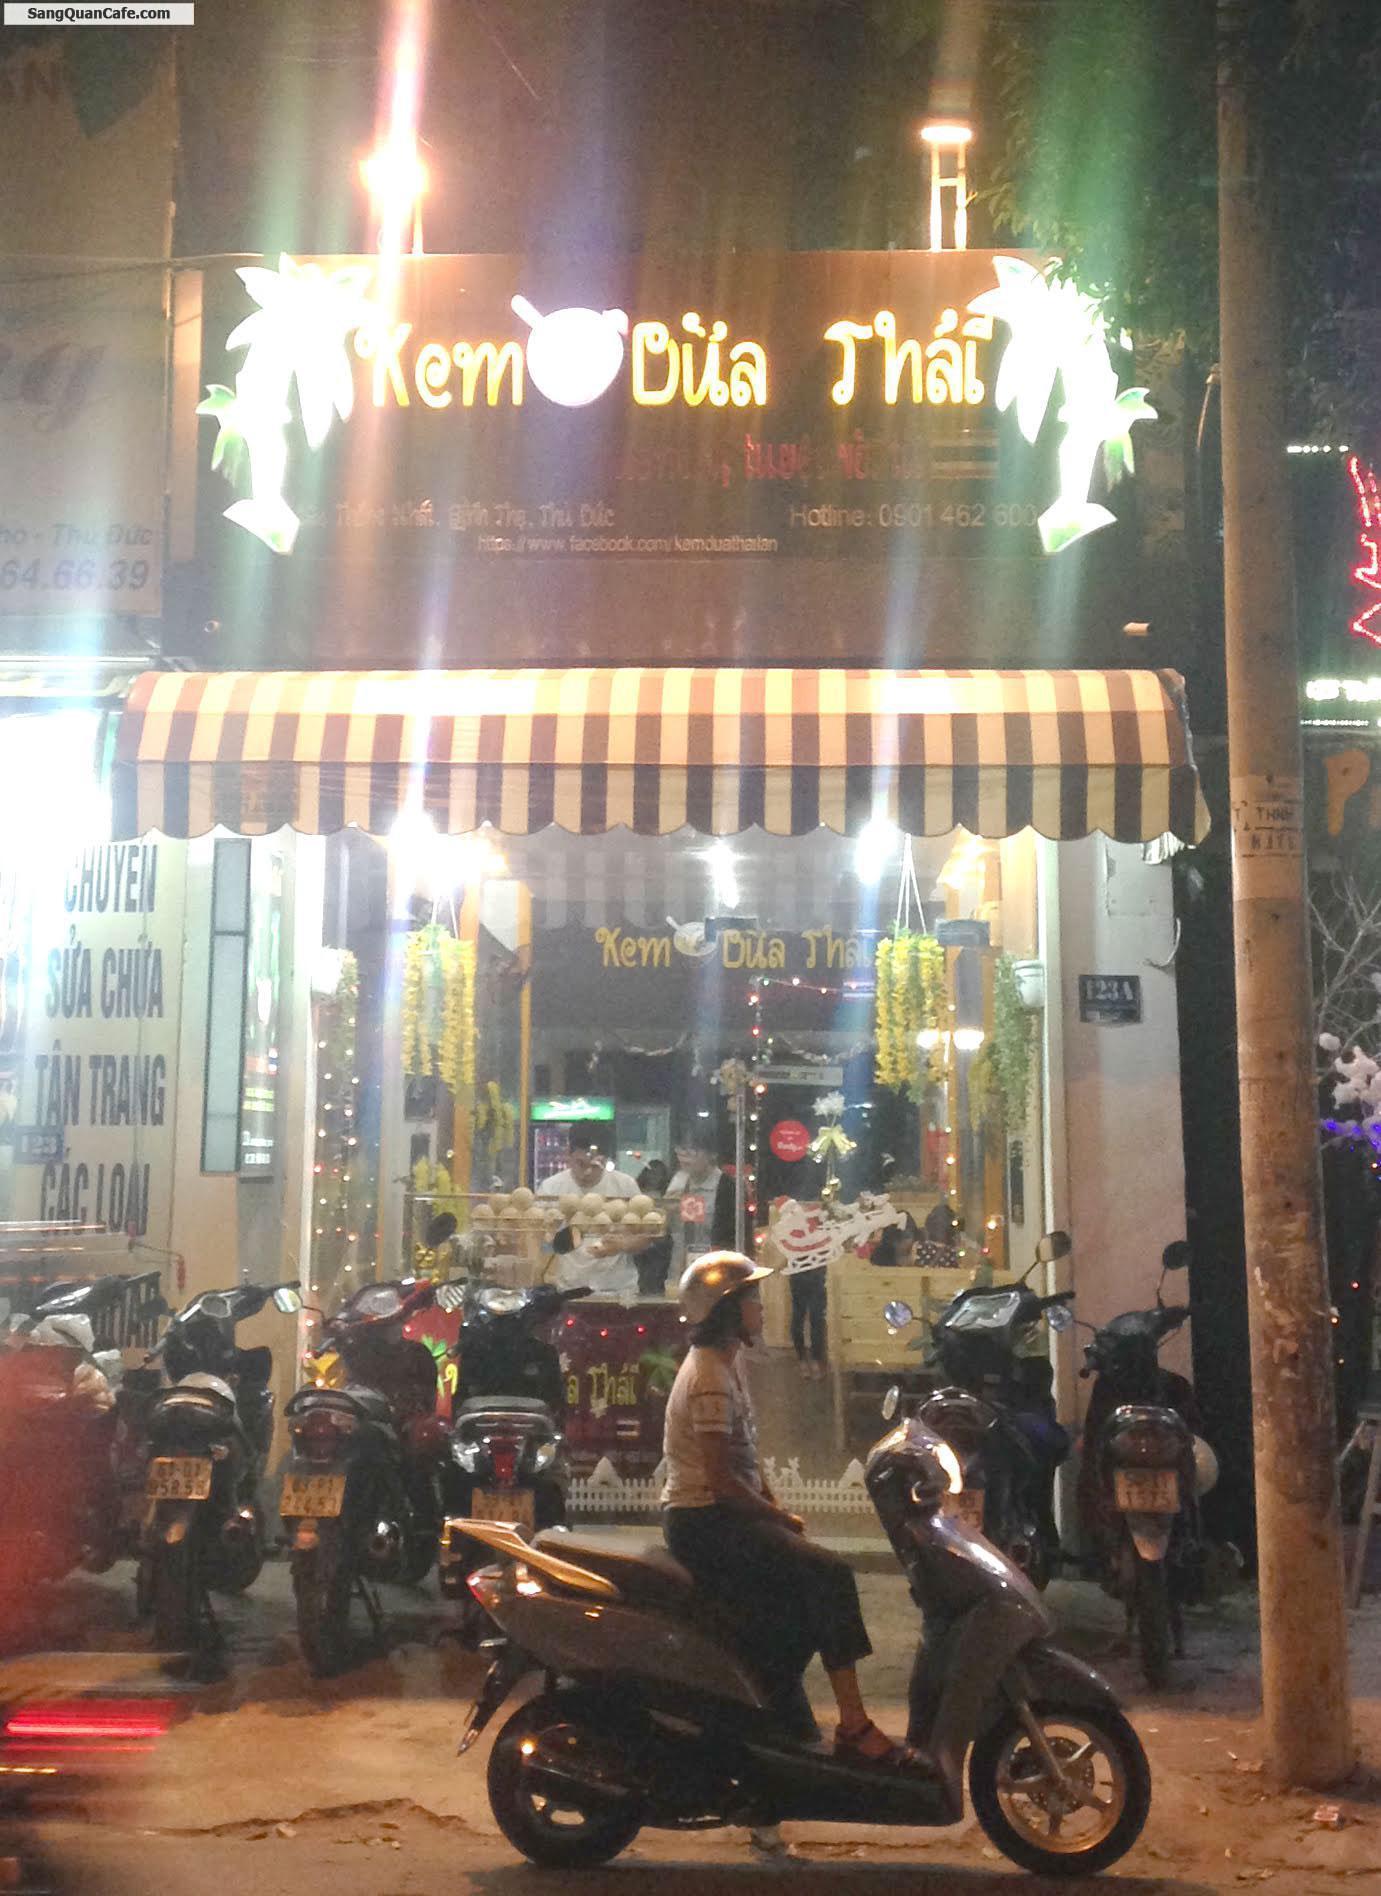 Sang quán cafe - Kem Dừa Thái đường Thống Nhất